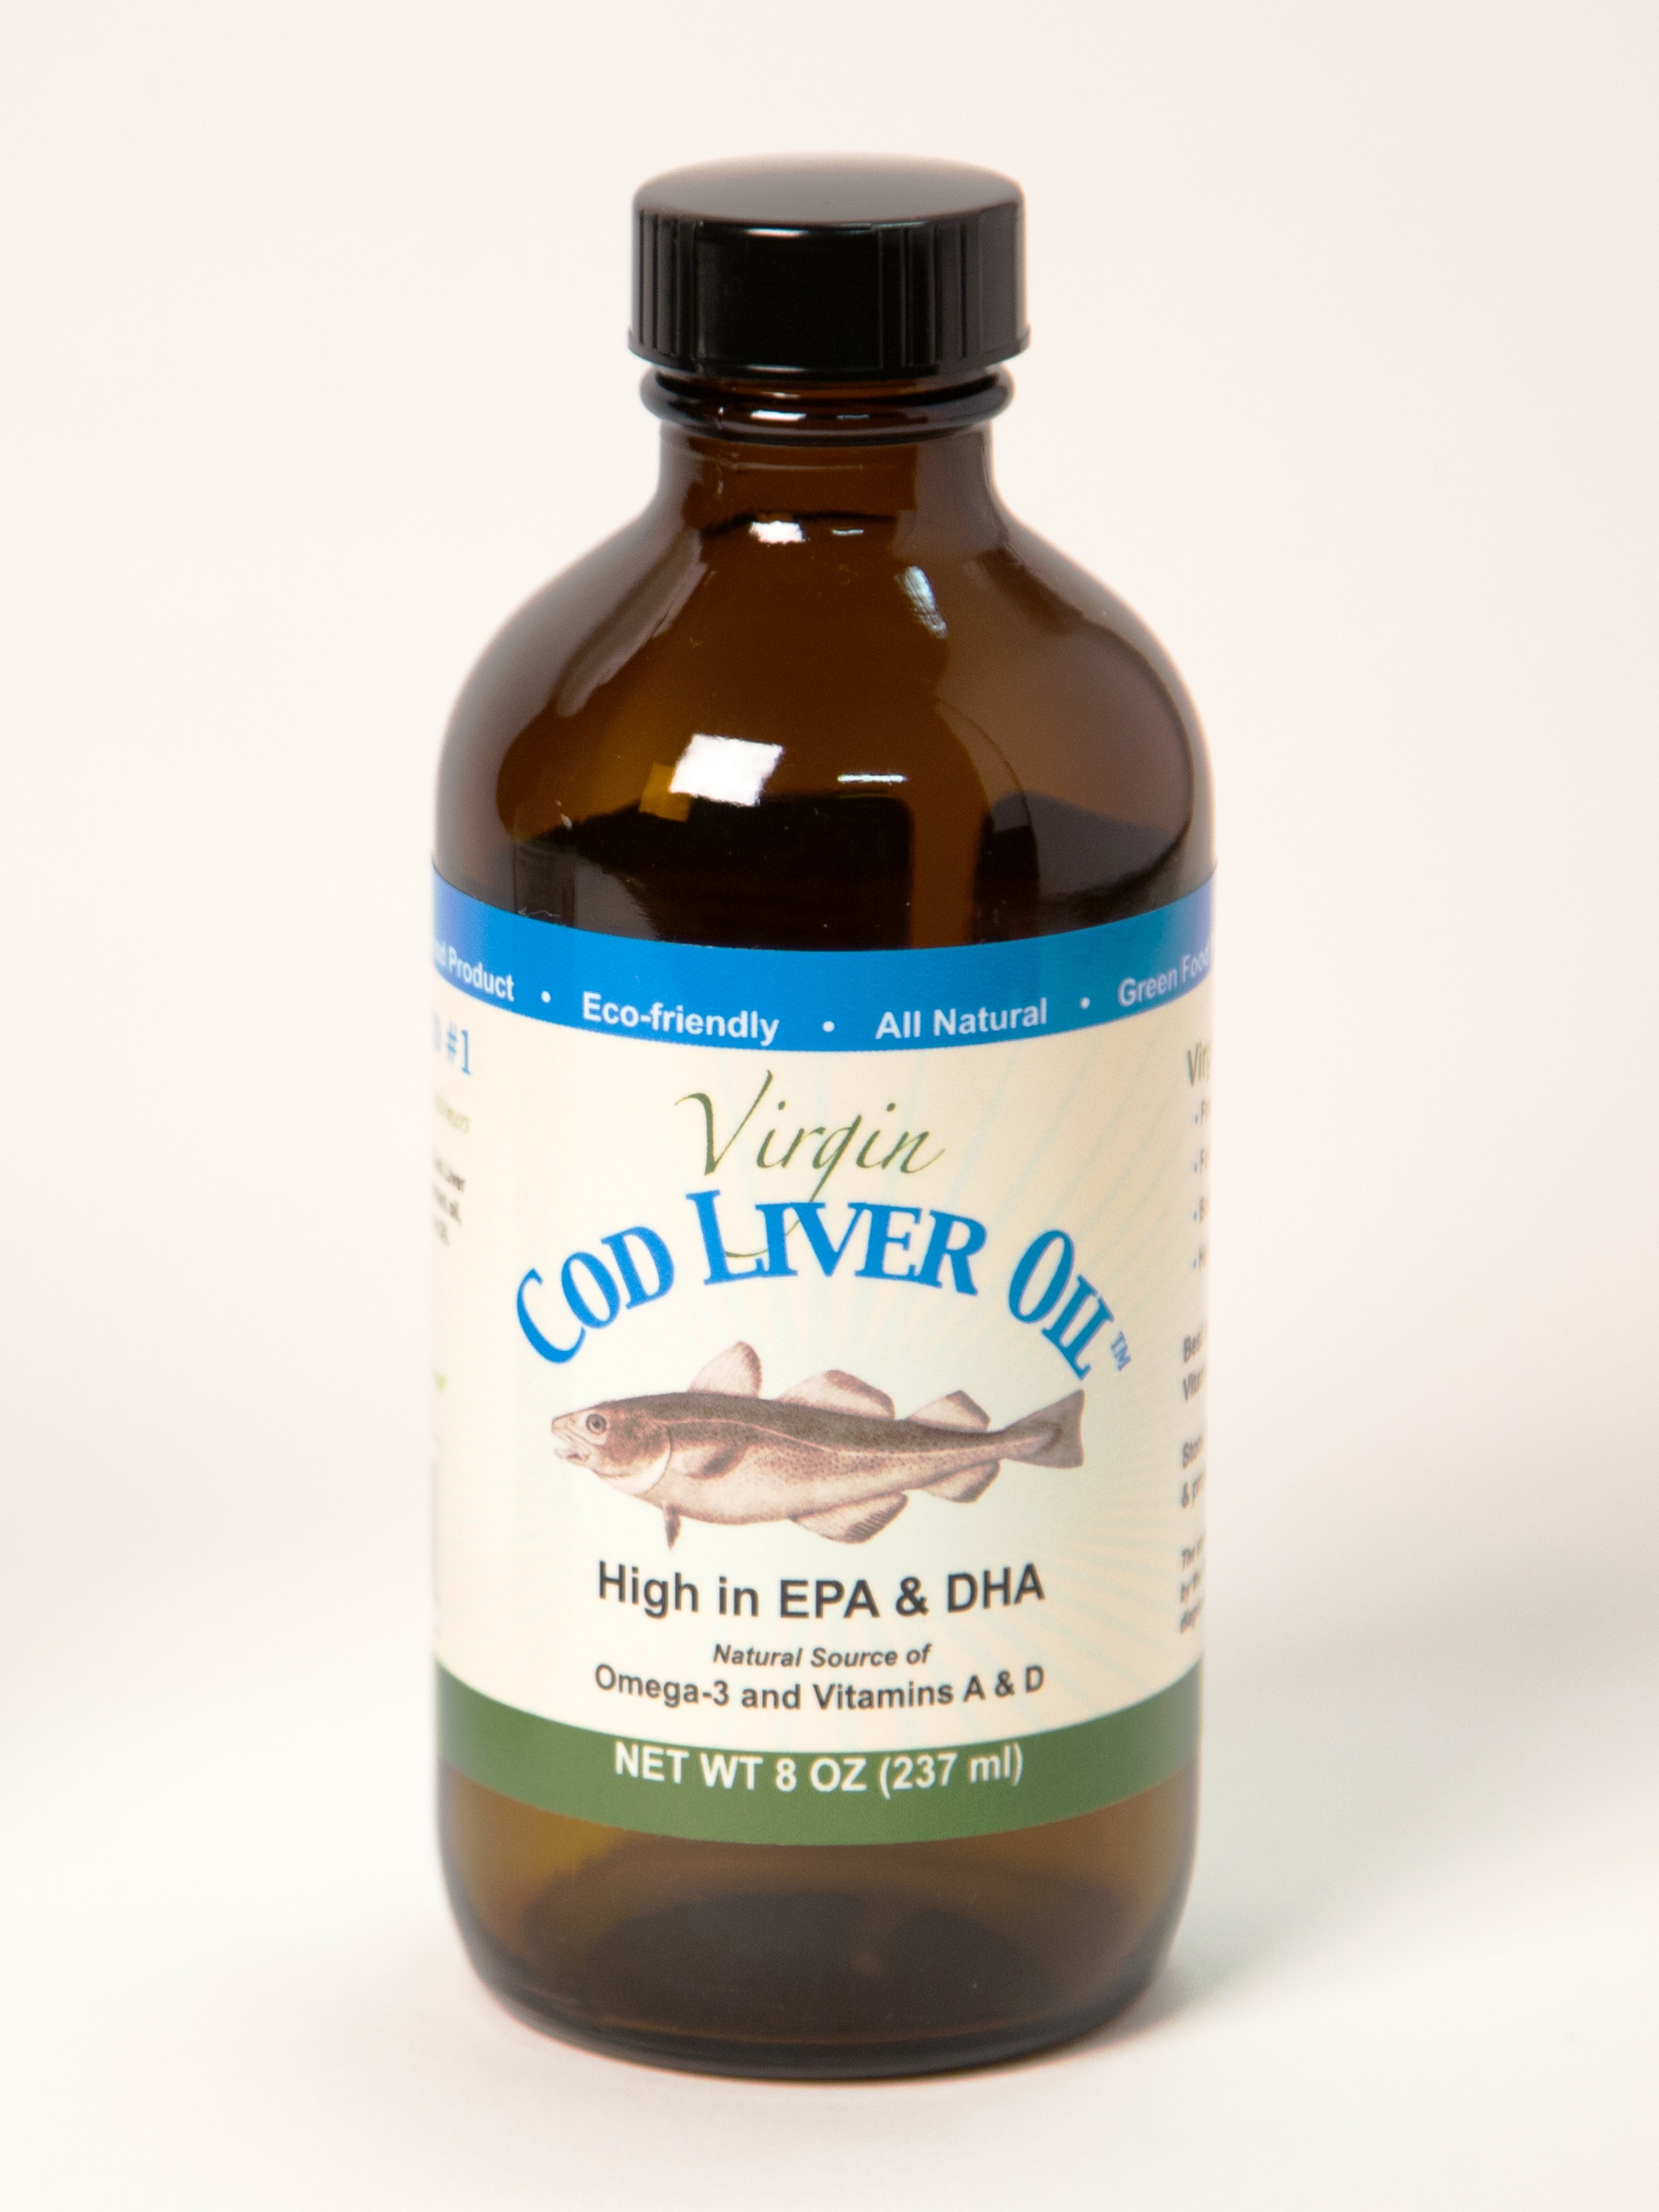 Cod Liver Oil de Natural Life